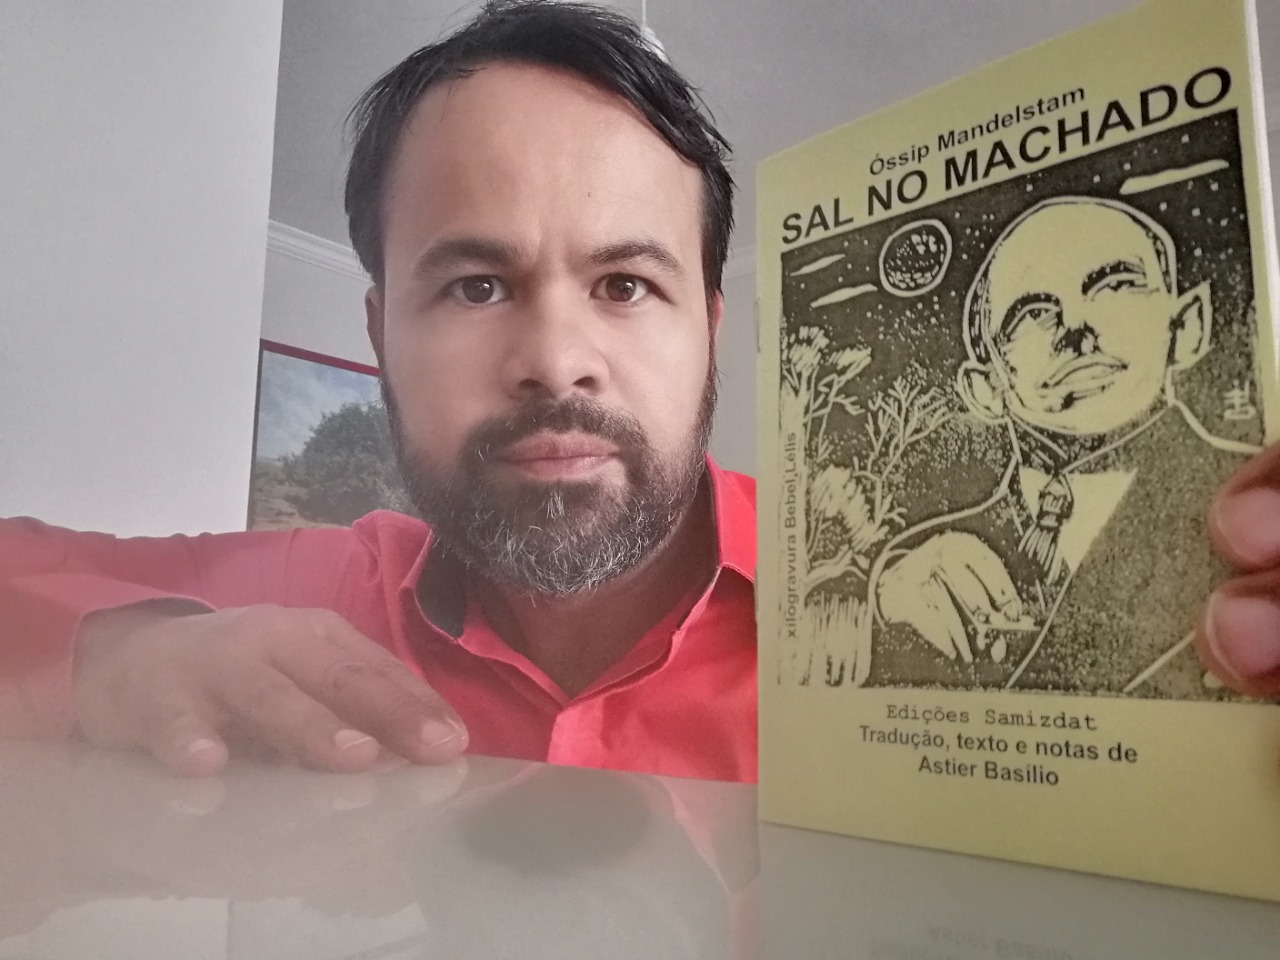 Dia 17 de agosto O Sal do Machado de Ossip Mandelstam traduzido por Astier Basilio